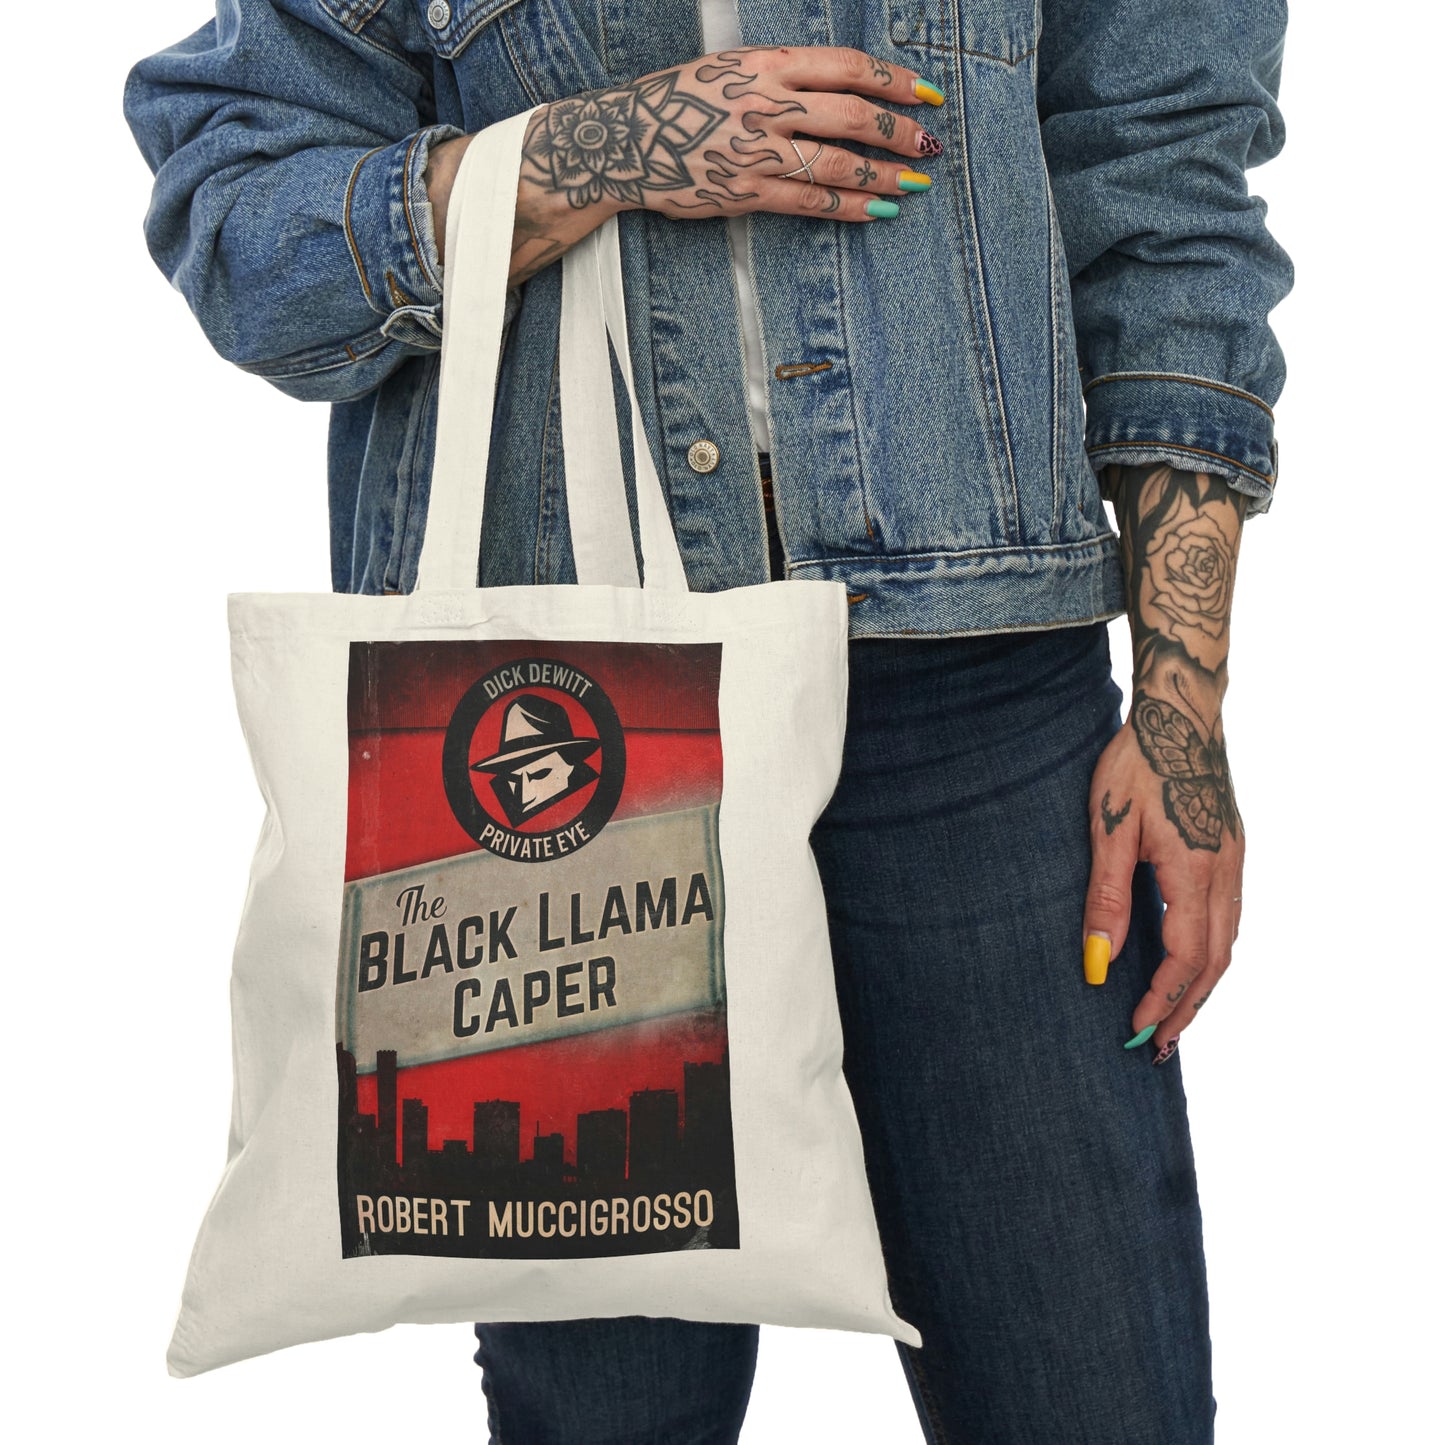 The Black Llama Caper - Natural Tote Bag